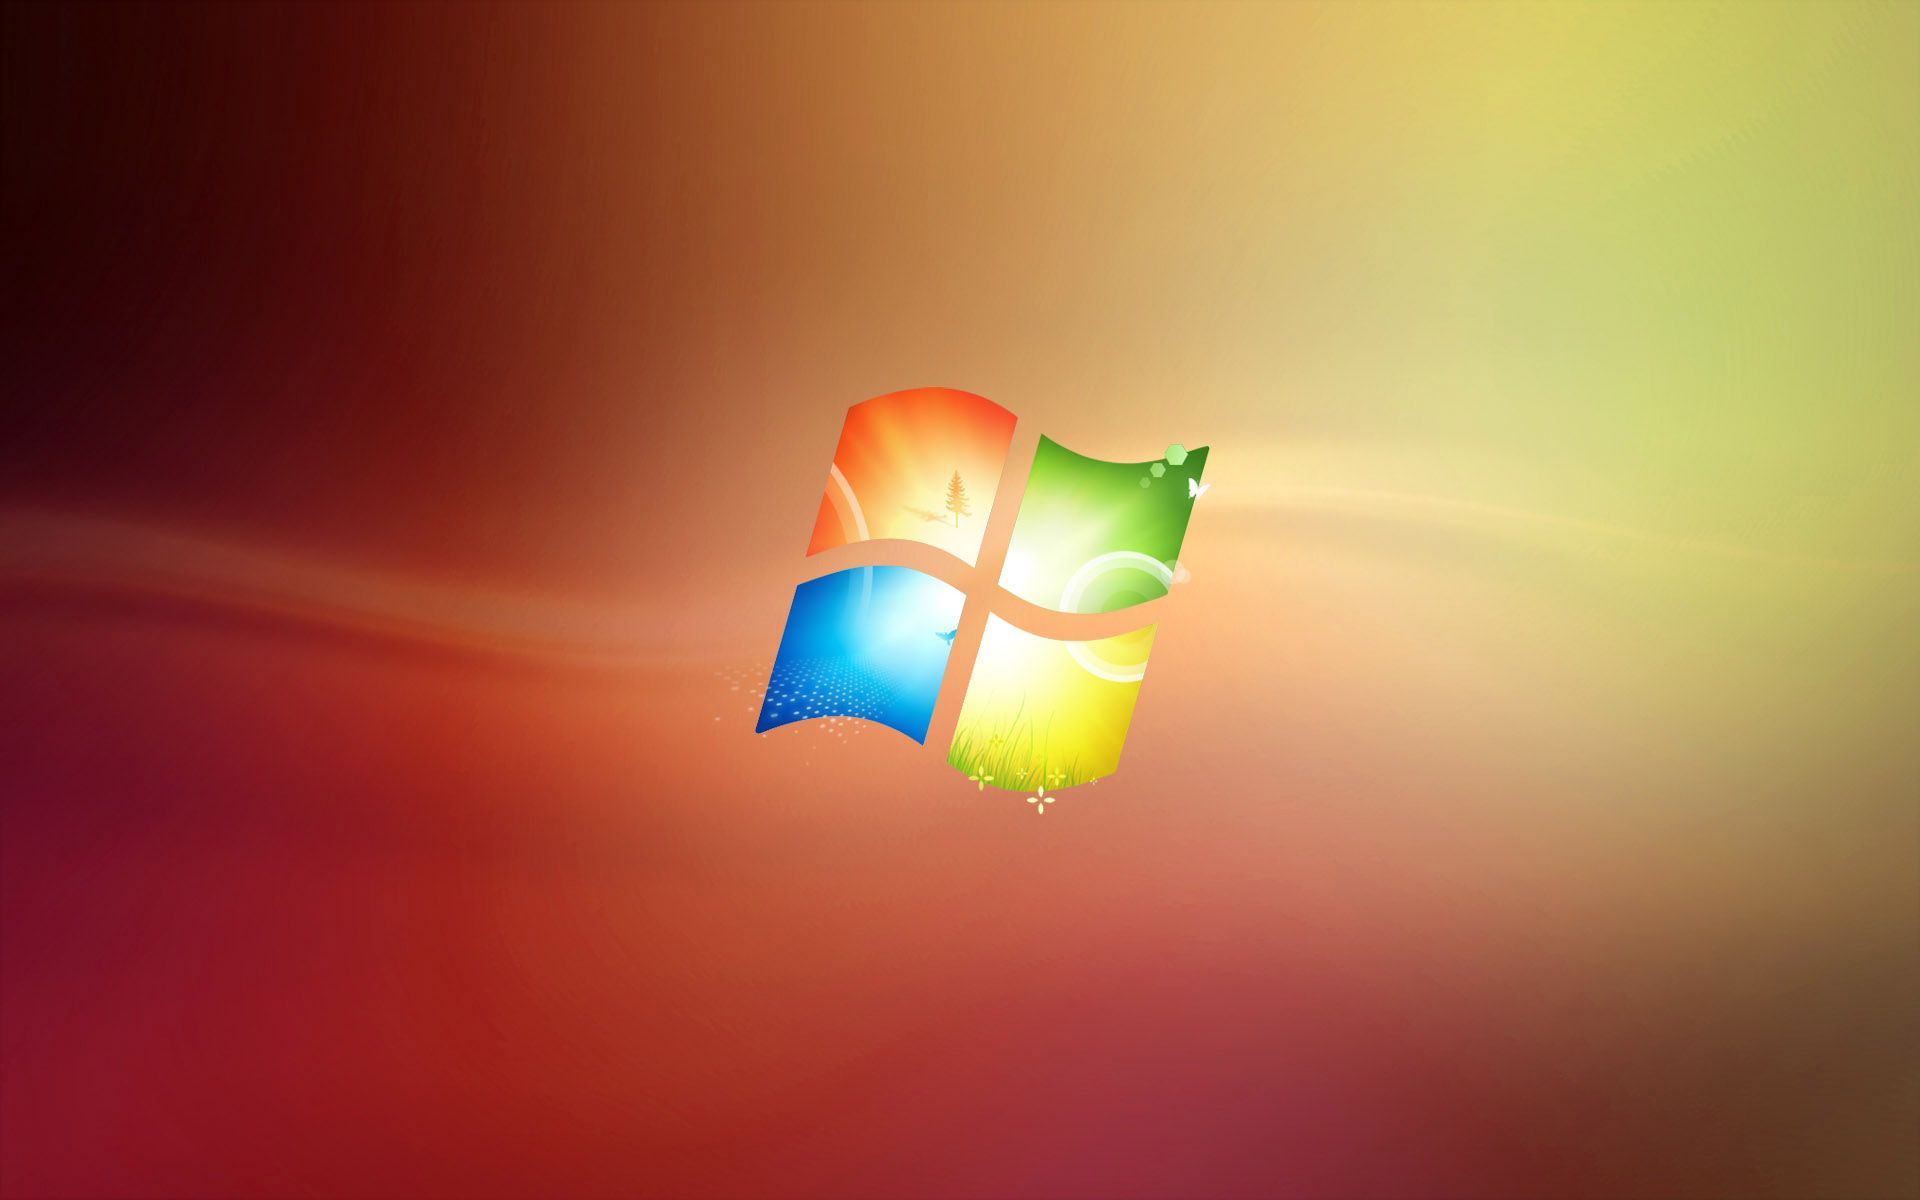 Windows 7 Summer Theme - Windows 7 Wallpaper 26875551 - Fanpop